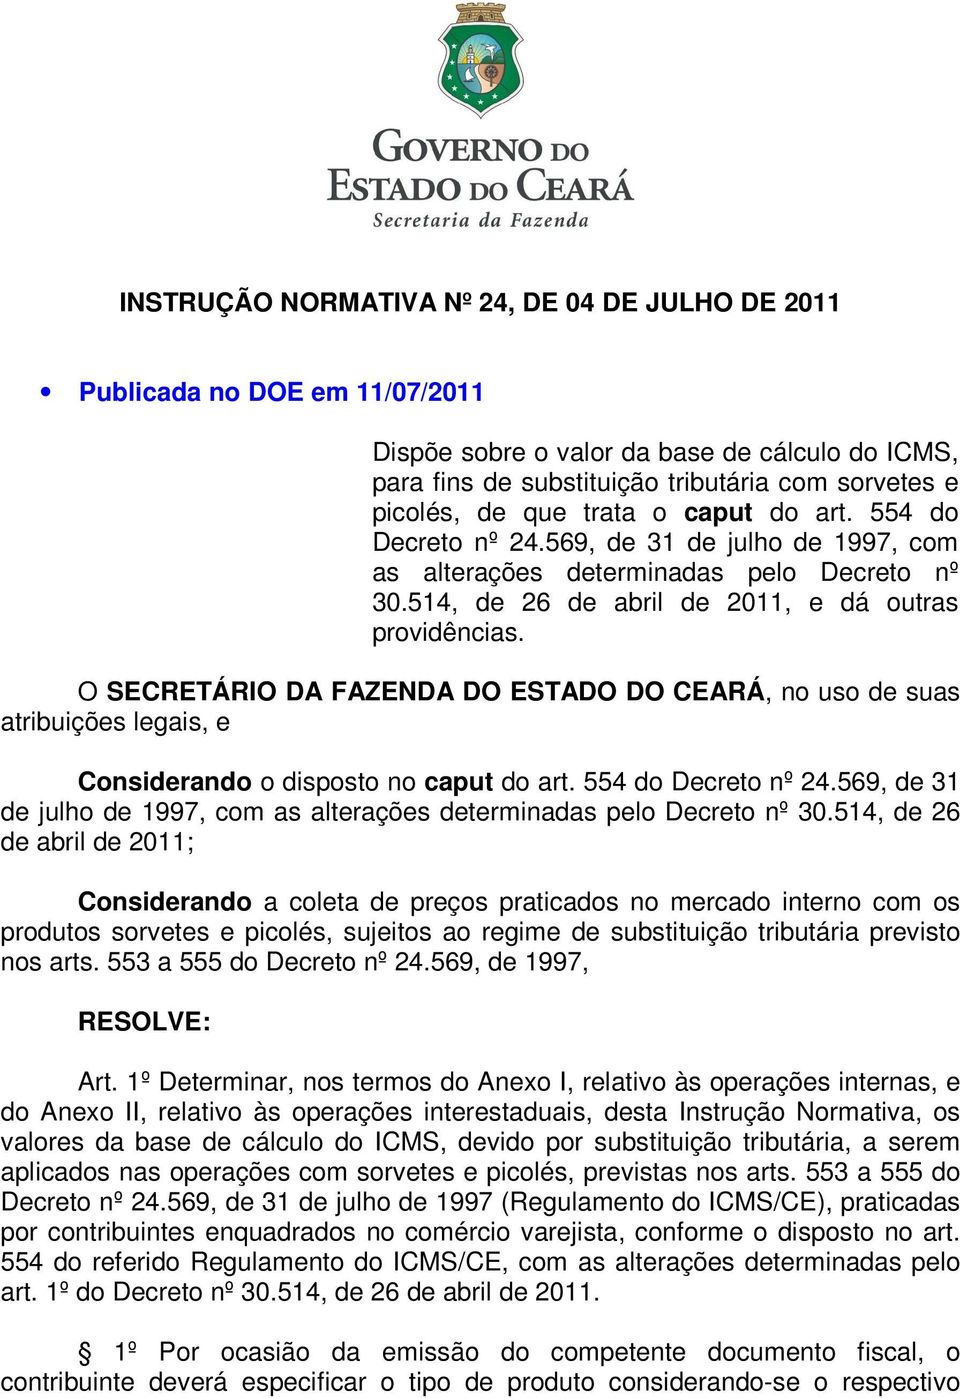 O SECRETÁRIO DA FAZENDA DO ESTADO DO CEARÁ, no uso de suas atribuições legais, e Considerando o disposto no caput do art. 554 do Decreto nº 24.